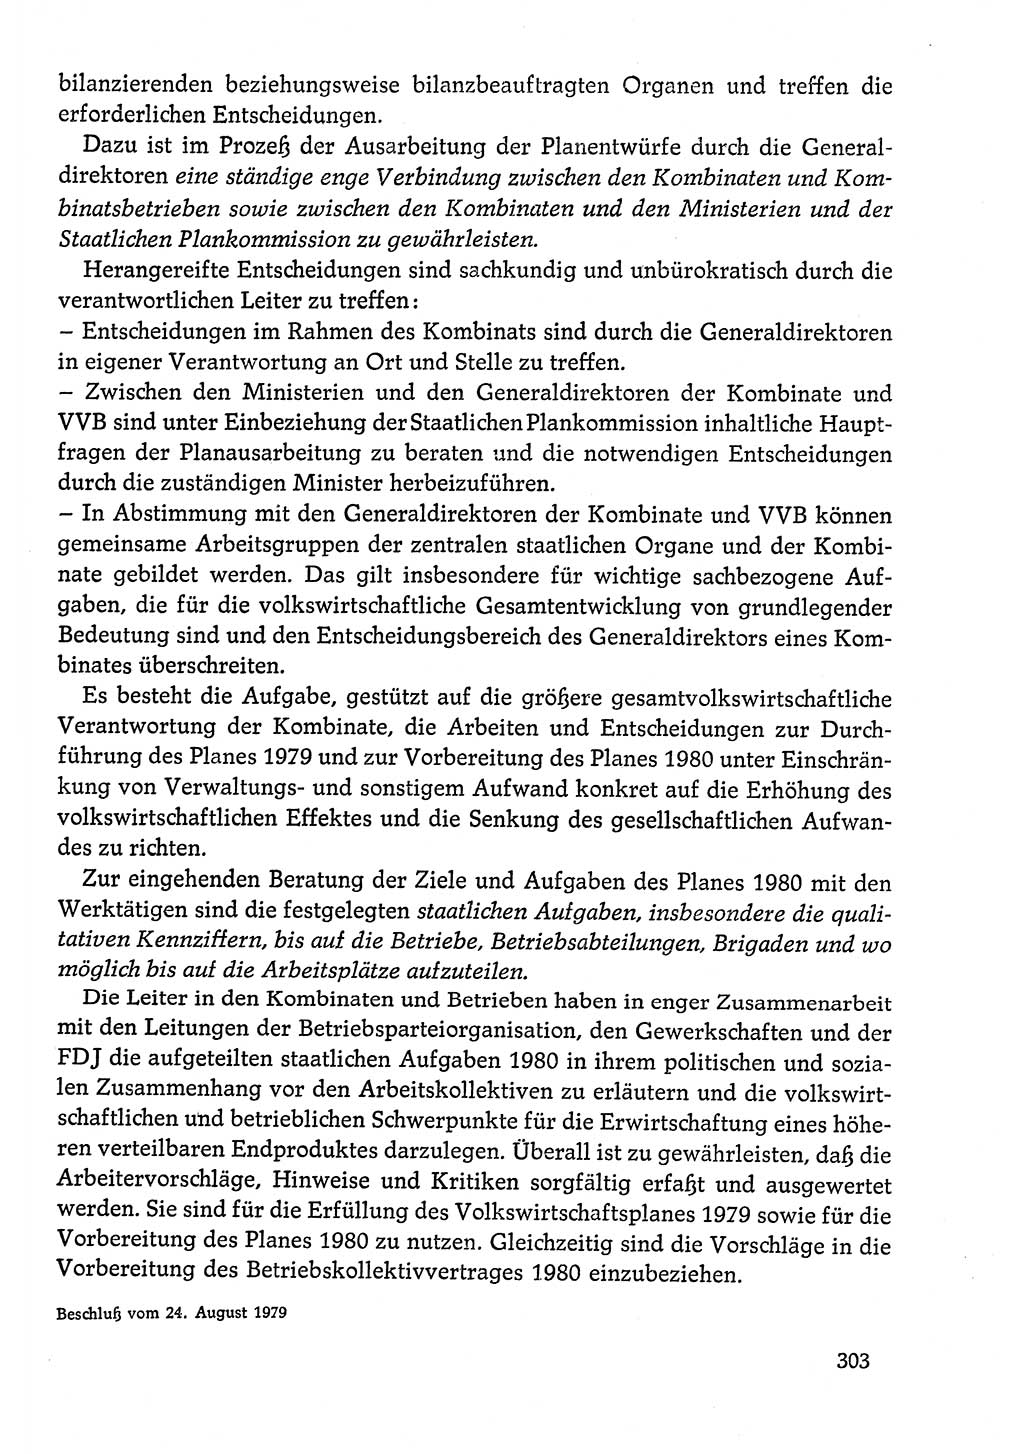 Dokumente der Sozialistischen Einheitspartei Deutschlands (SED) [Deutsche Demokratische Republik (DDR)] 1978-1979, Seite 303 (Dok. SED DDR 1978-1979, S. 303)